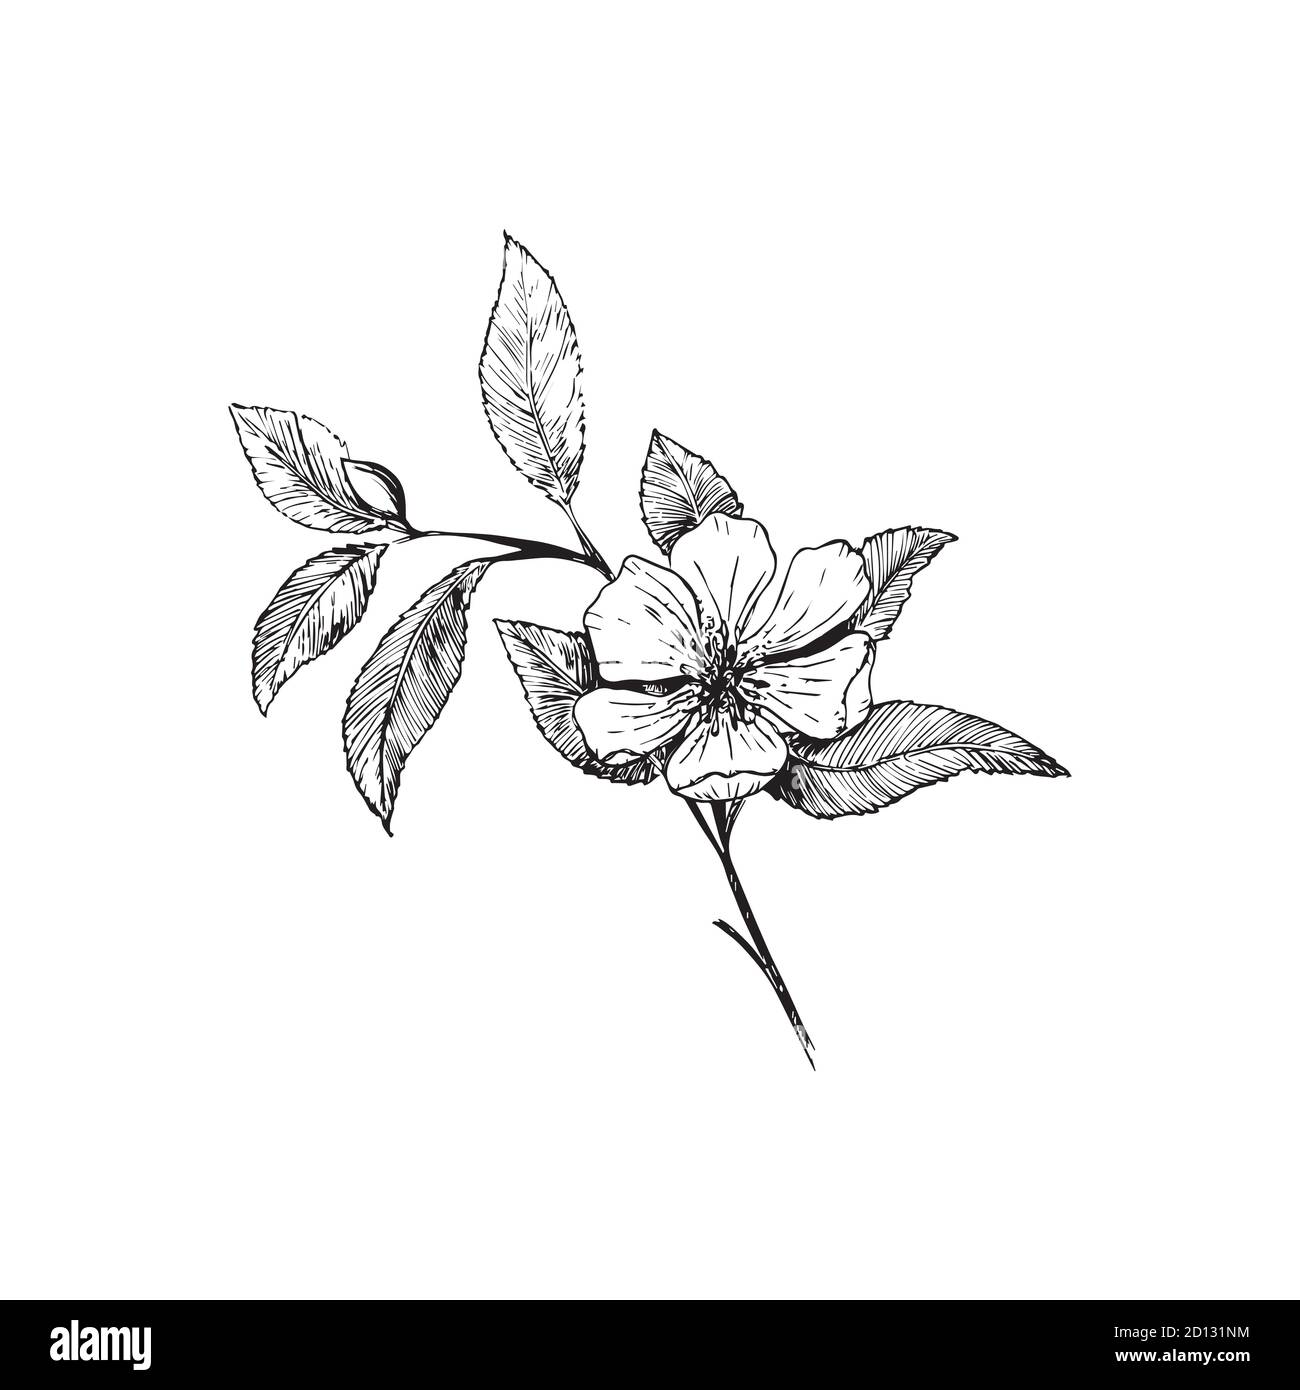 Branche de cerisier isolée sur fond blanc. Main botanique vintage - illustration dessinée. Fleurs printanières de pommiers ou de cerisiers. Illustration de Vecteur